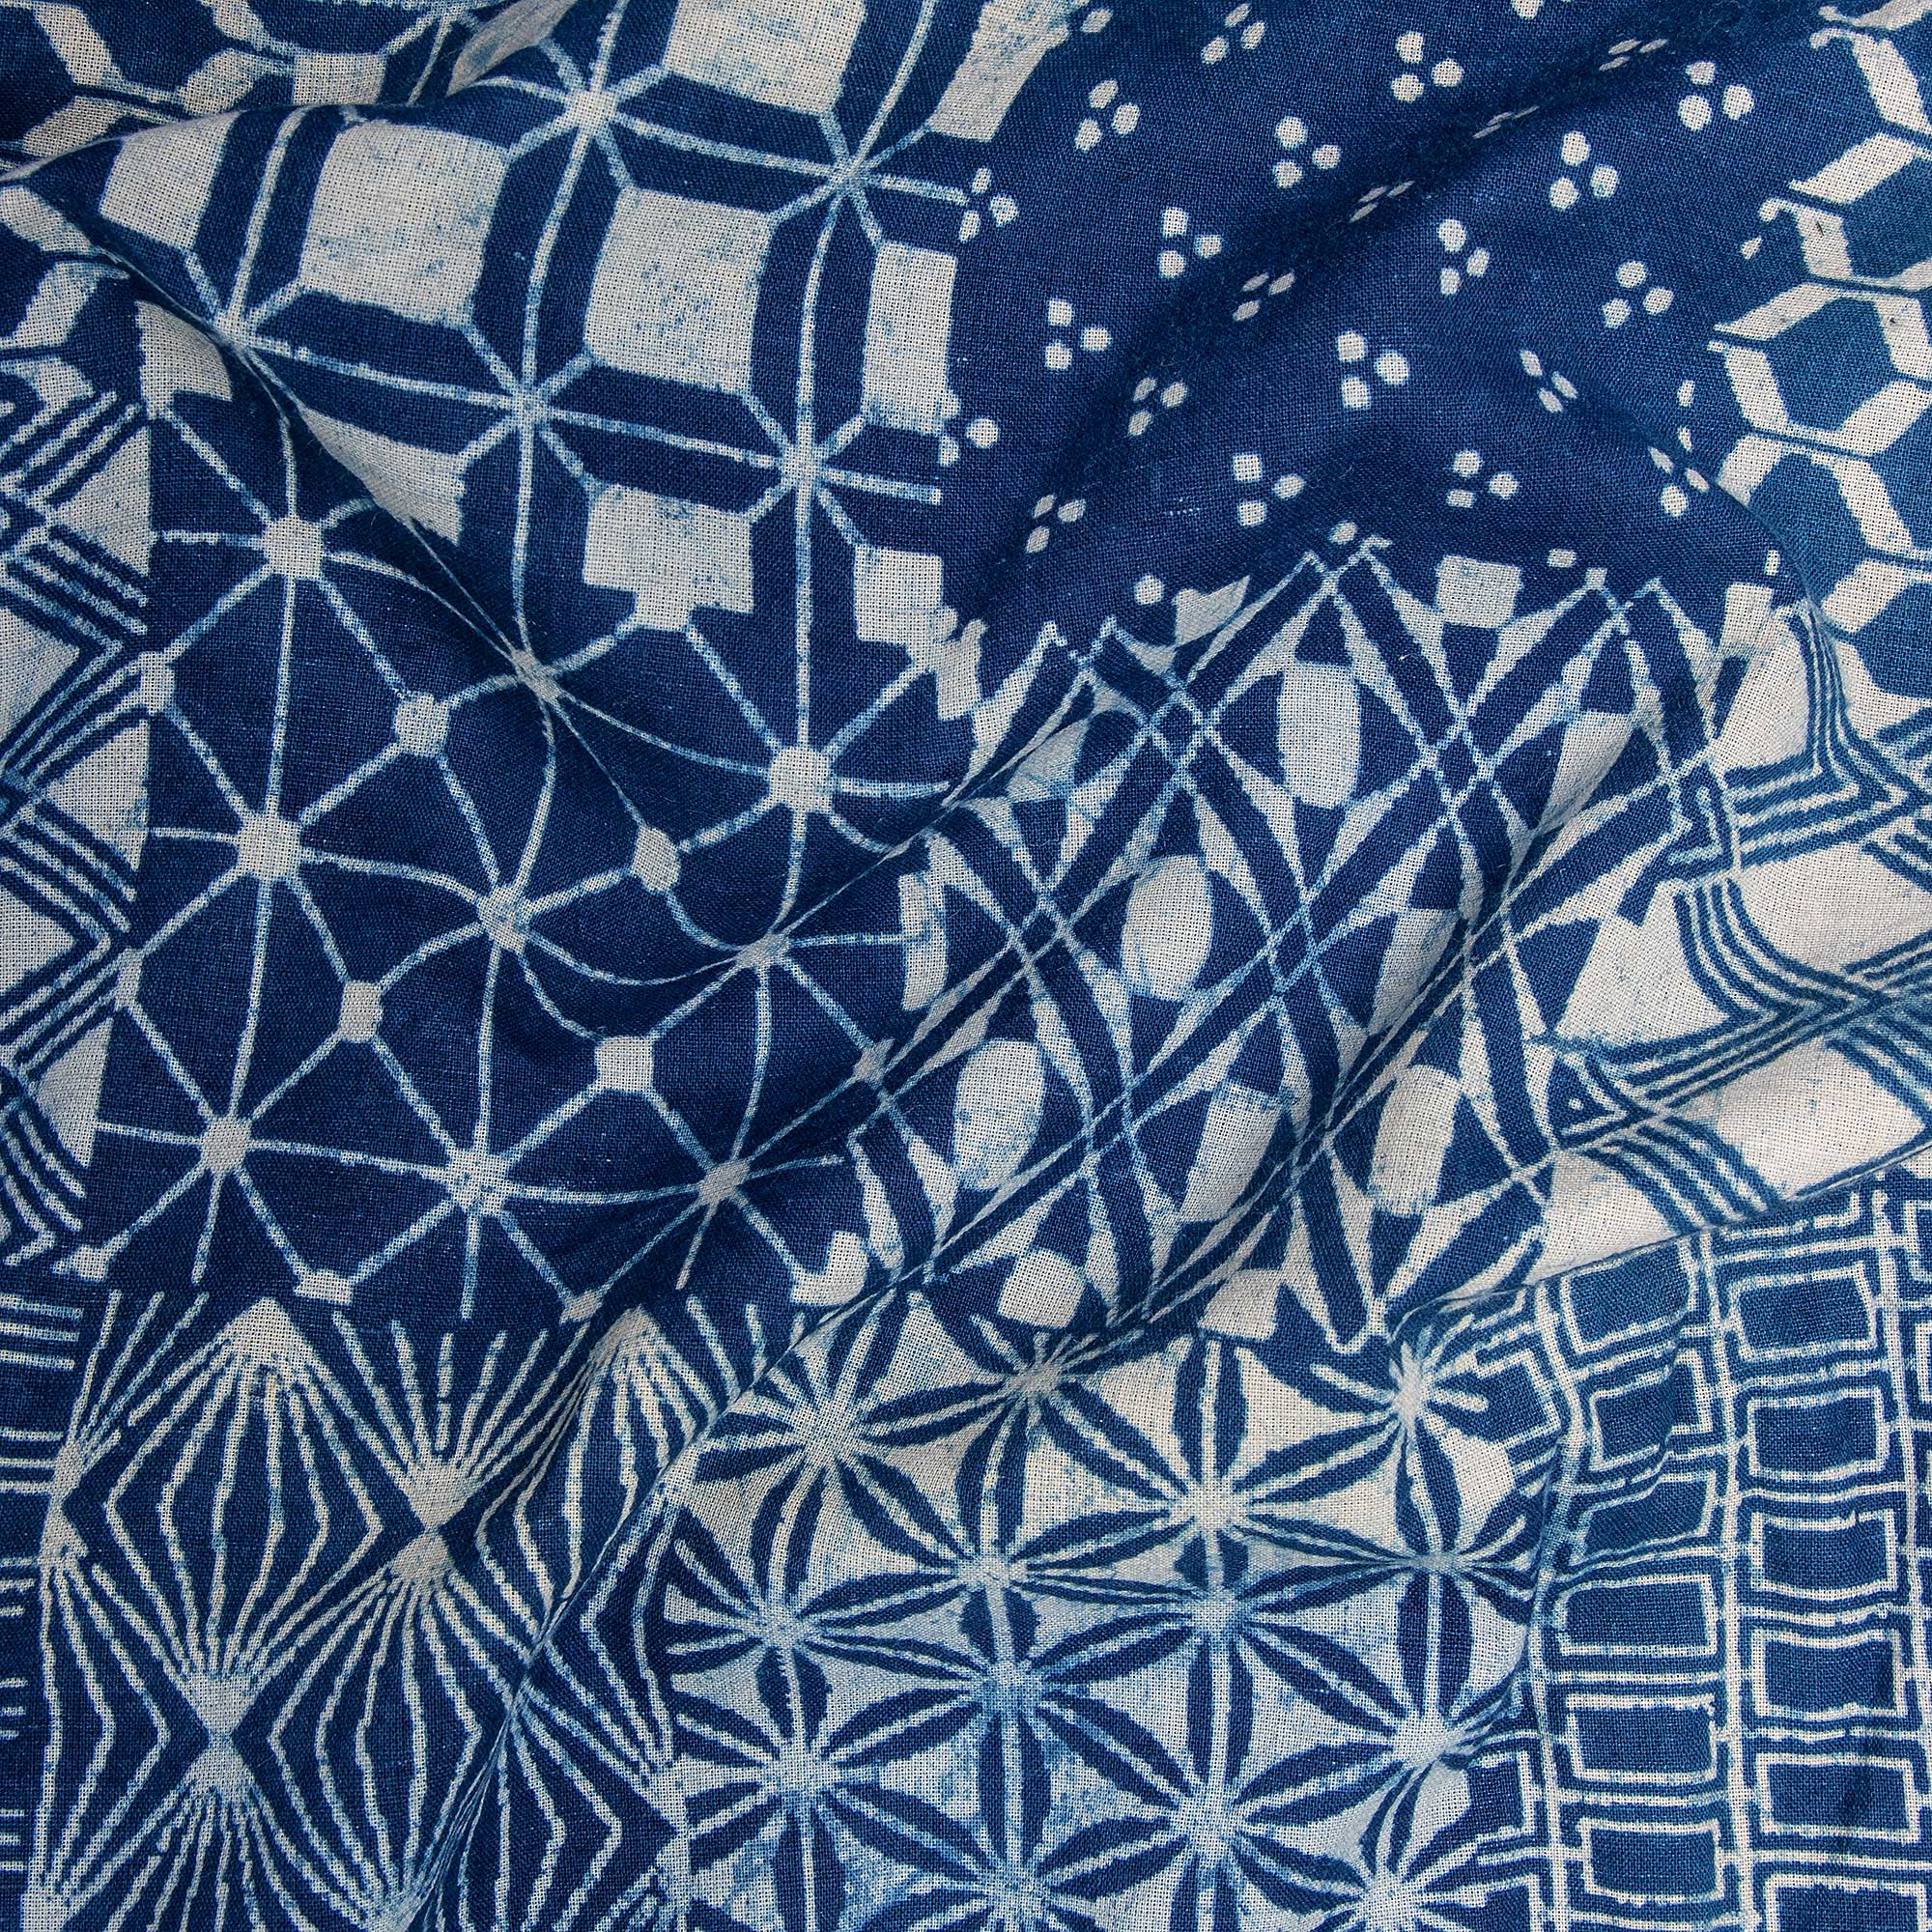 Square Printed Indigo Cotton Fabric Online